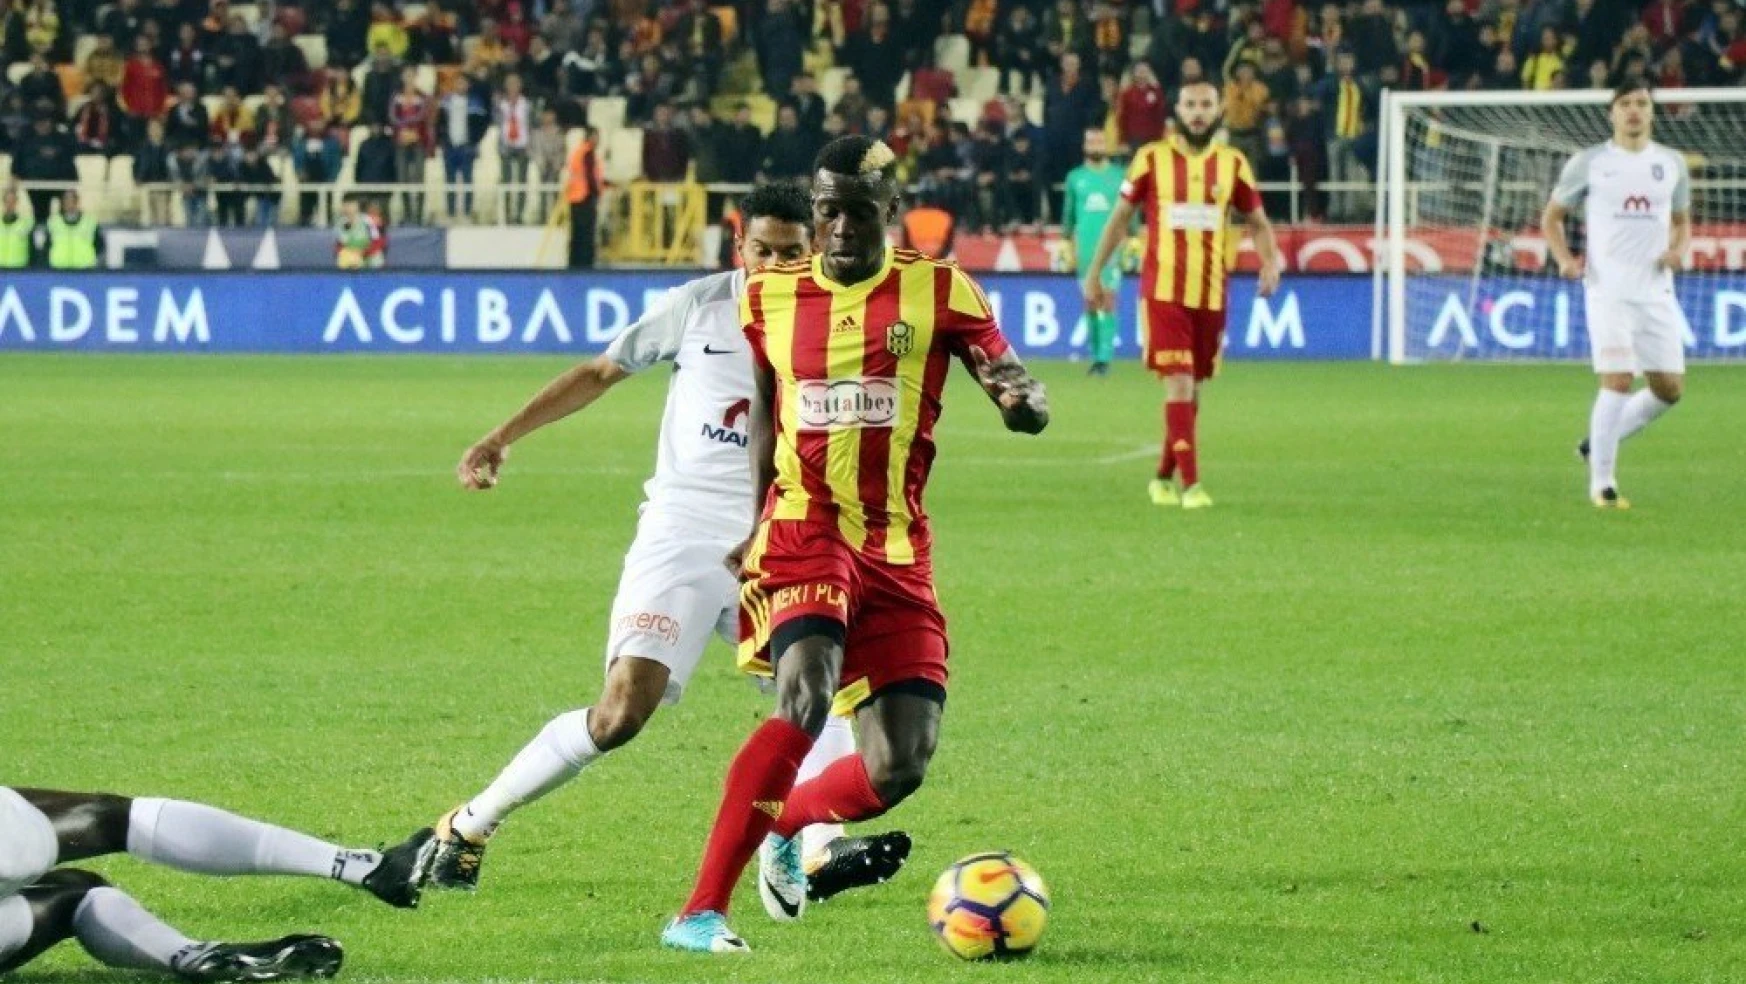 Süper Lig: Evkur Yeni Malatyaspor: 0 - Medipol Başakşehir: 2 (Maç sonucu)
